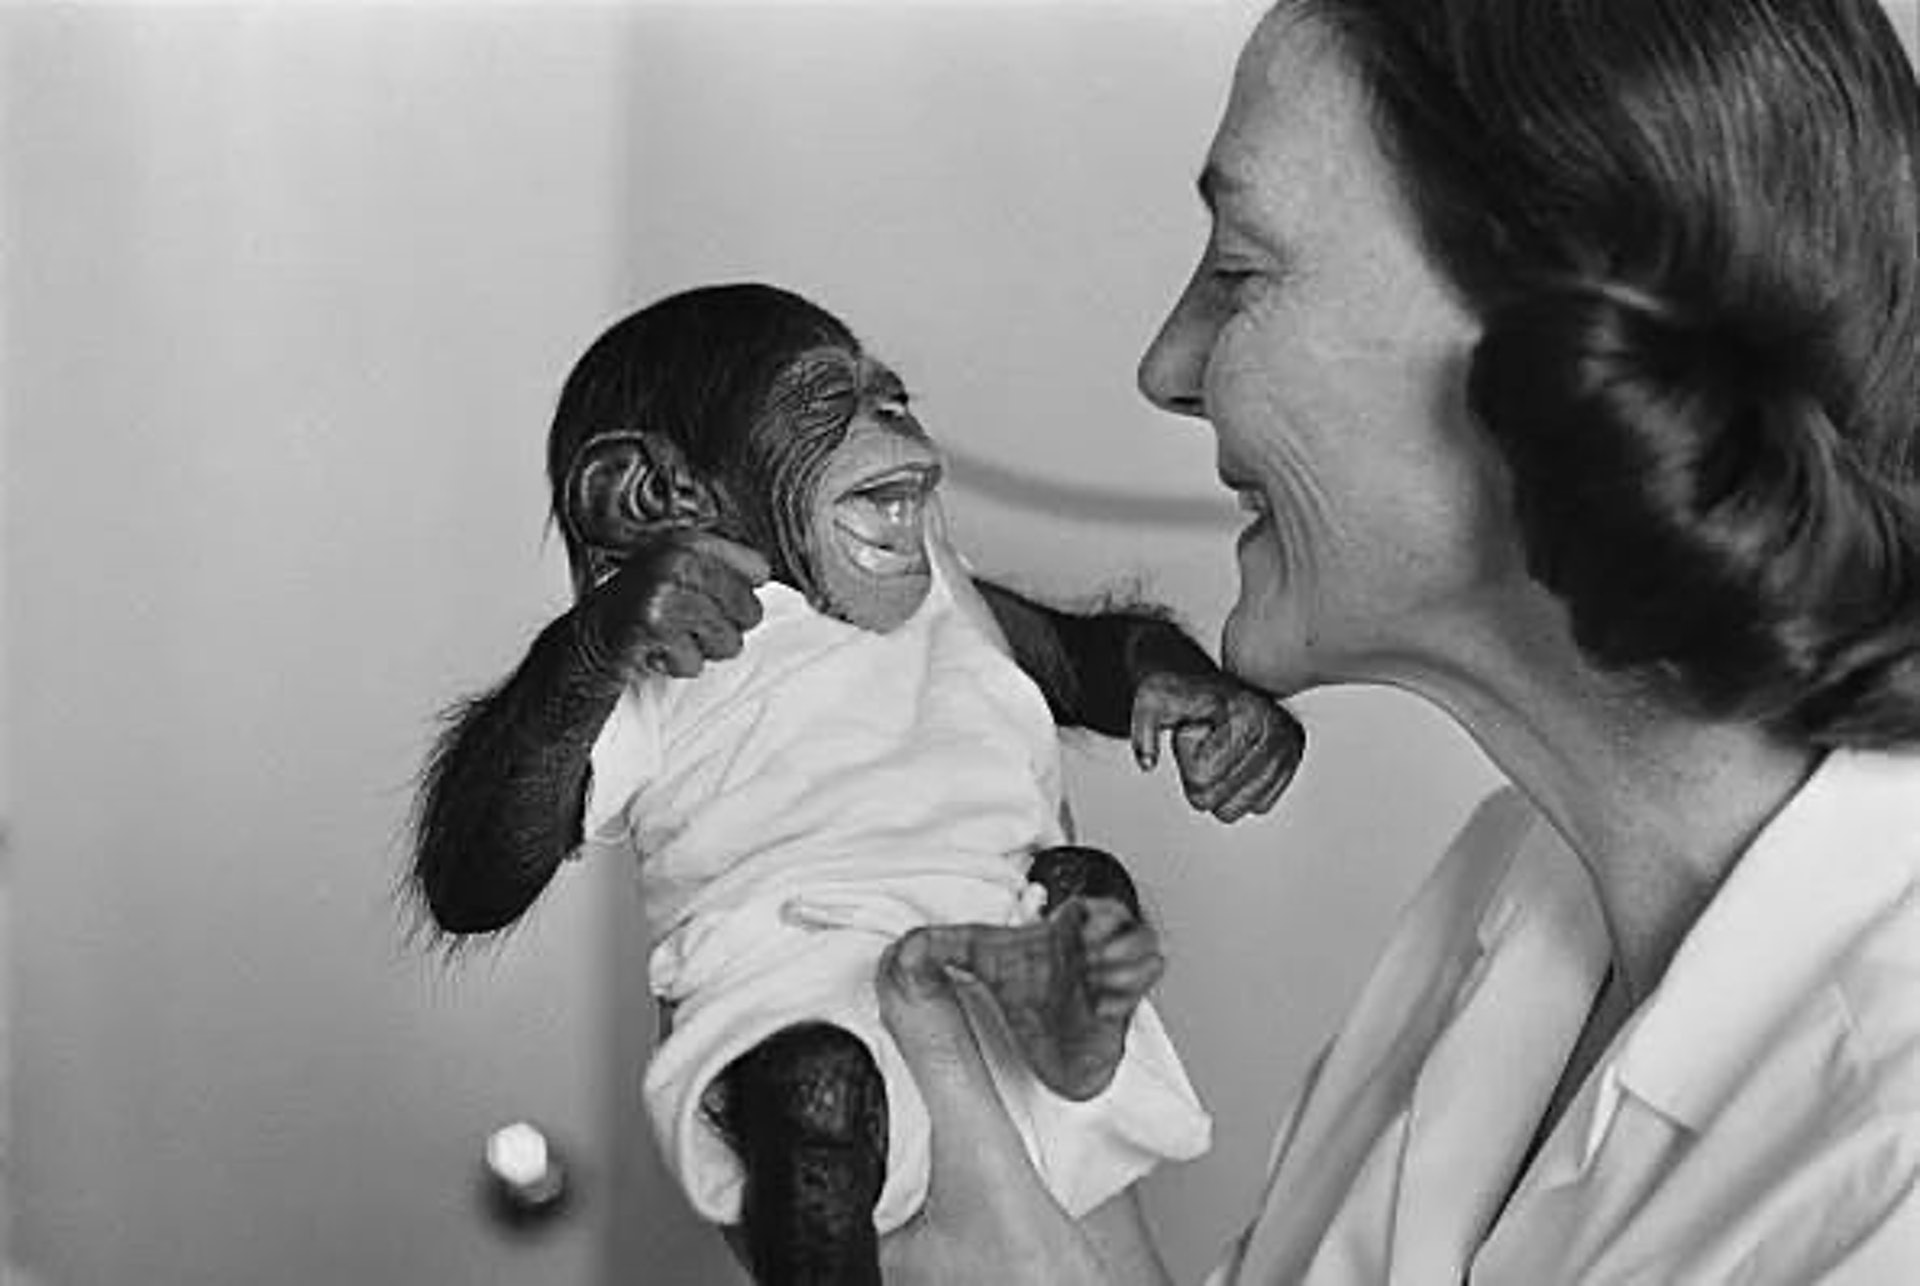 Nos anos 30, psiclogos criaram simultaneamente um chimpanz e um beb exatamente da mesma maneira para ver o que aconteceria